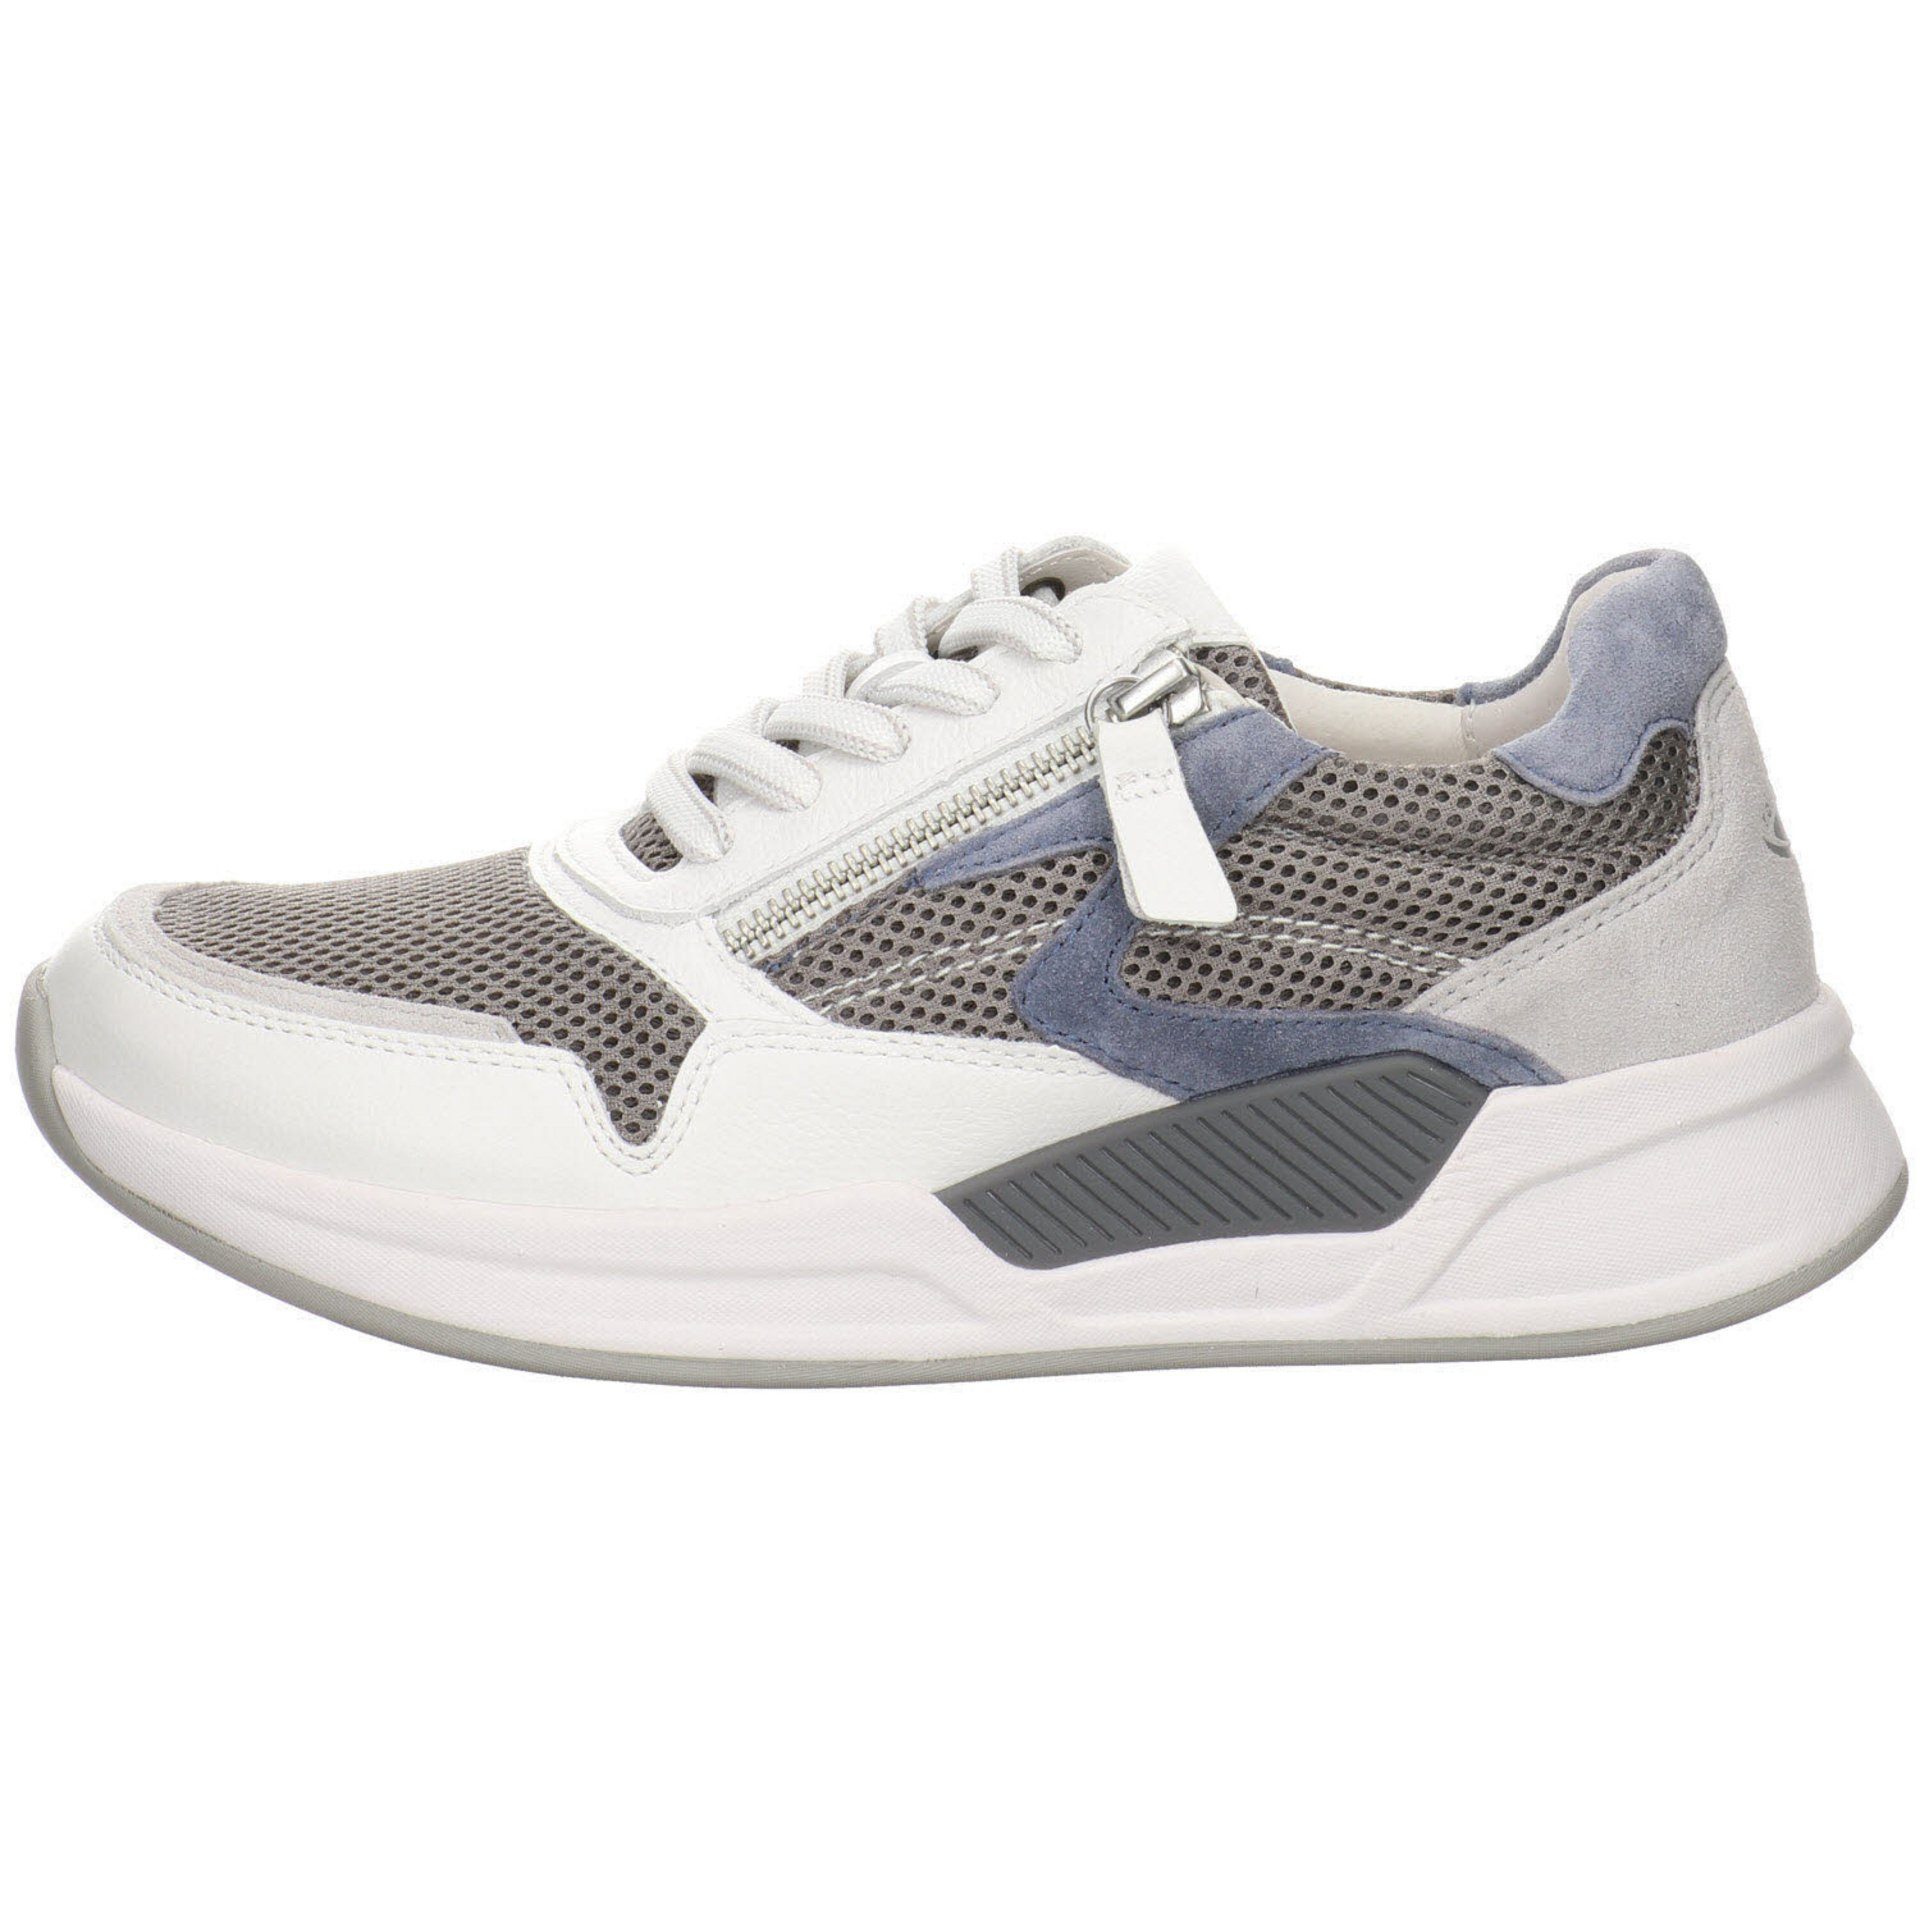 Schnürschuh grau/weiss/nautic Gabor Damen / Leder-/Textilkombination Schuhe Sneaker Sneaker Rollingsoft 41